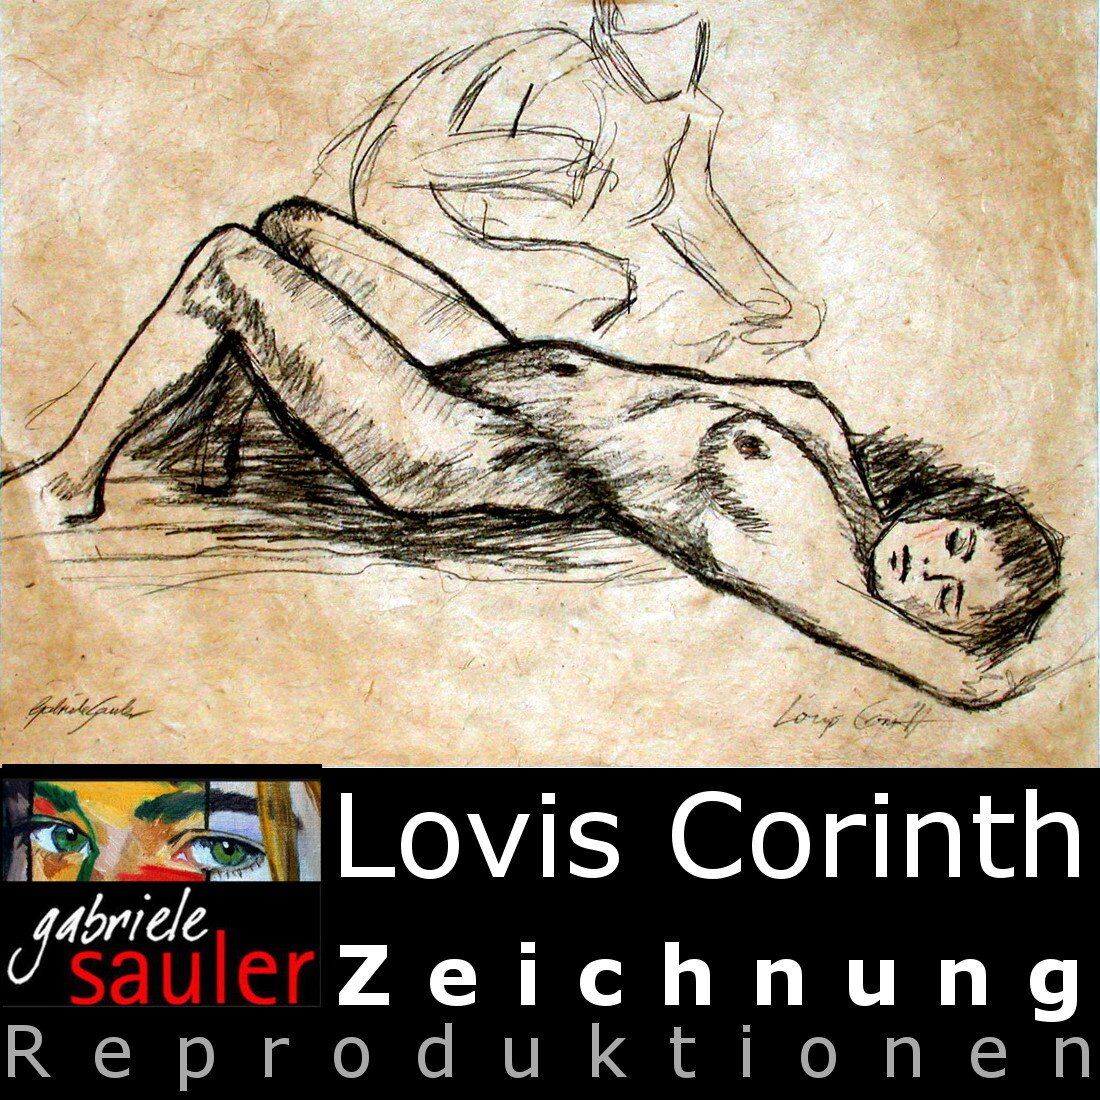 Konrad Kujau Meisterschülerin macht Kunstkopien zeichnen lassen als Repro ein Aktmalerei nach Lovis Corinth Liegender weiblicher Akt gezeichnet abgezeichnet von Gabriele Sauler